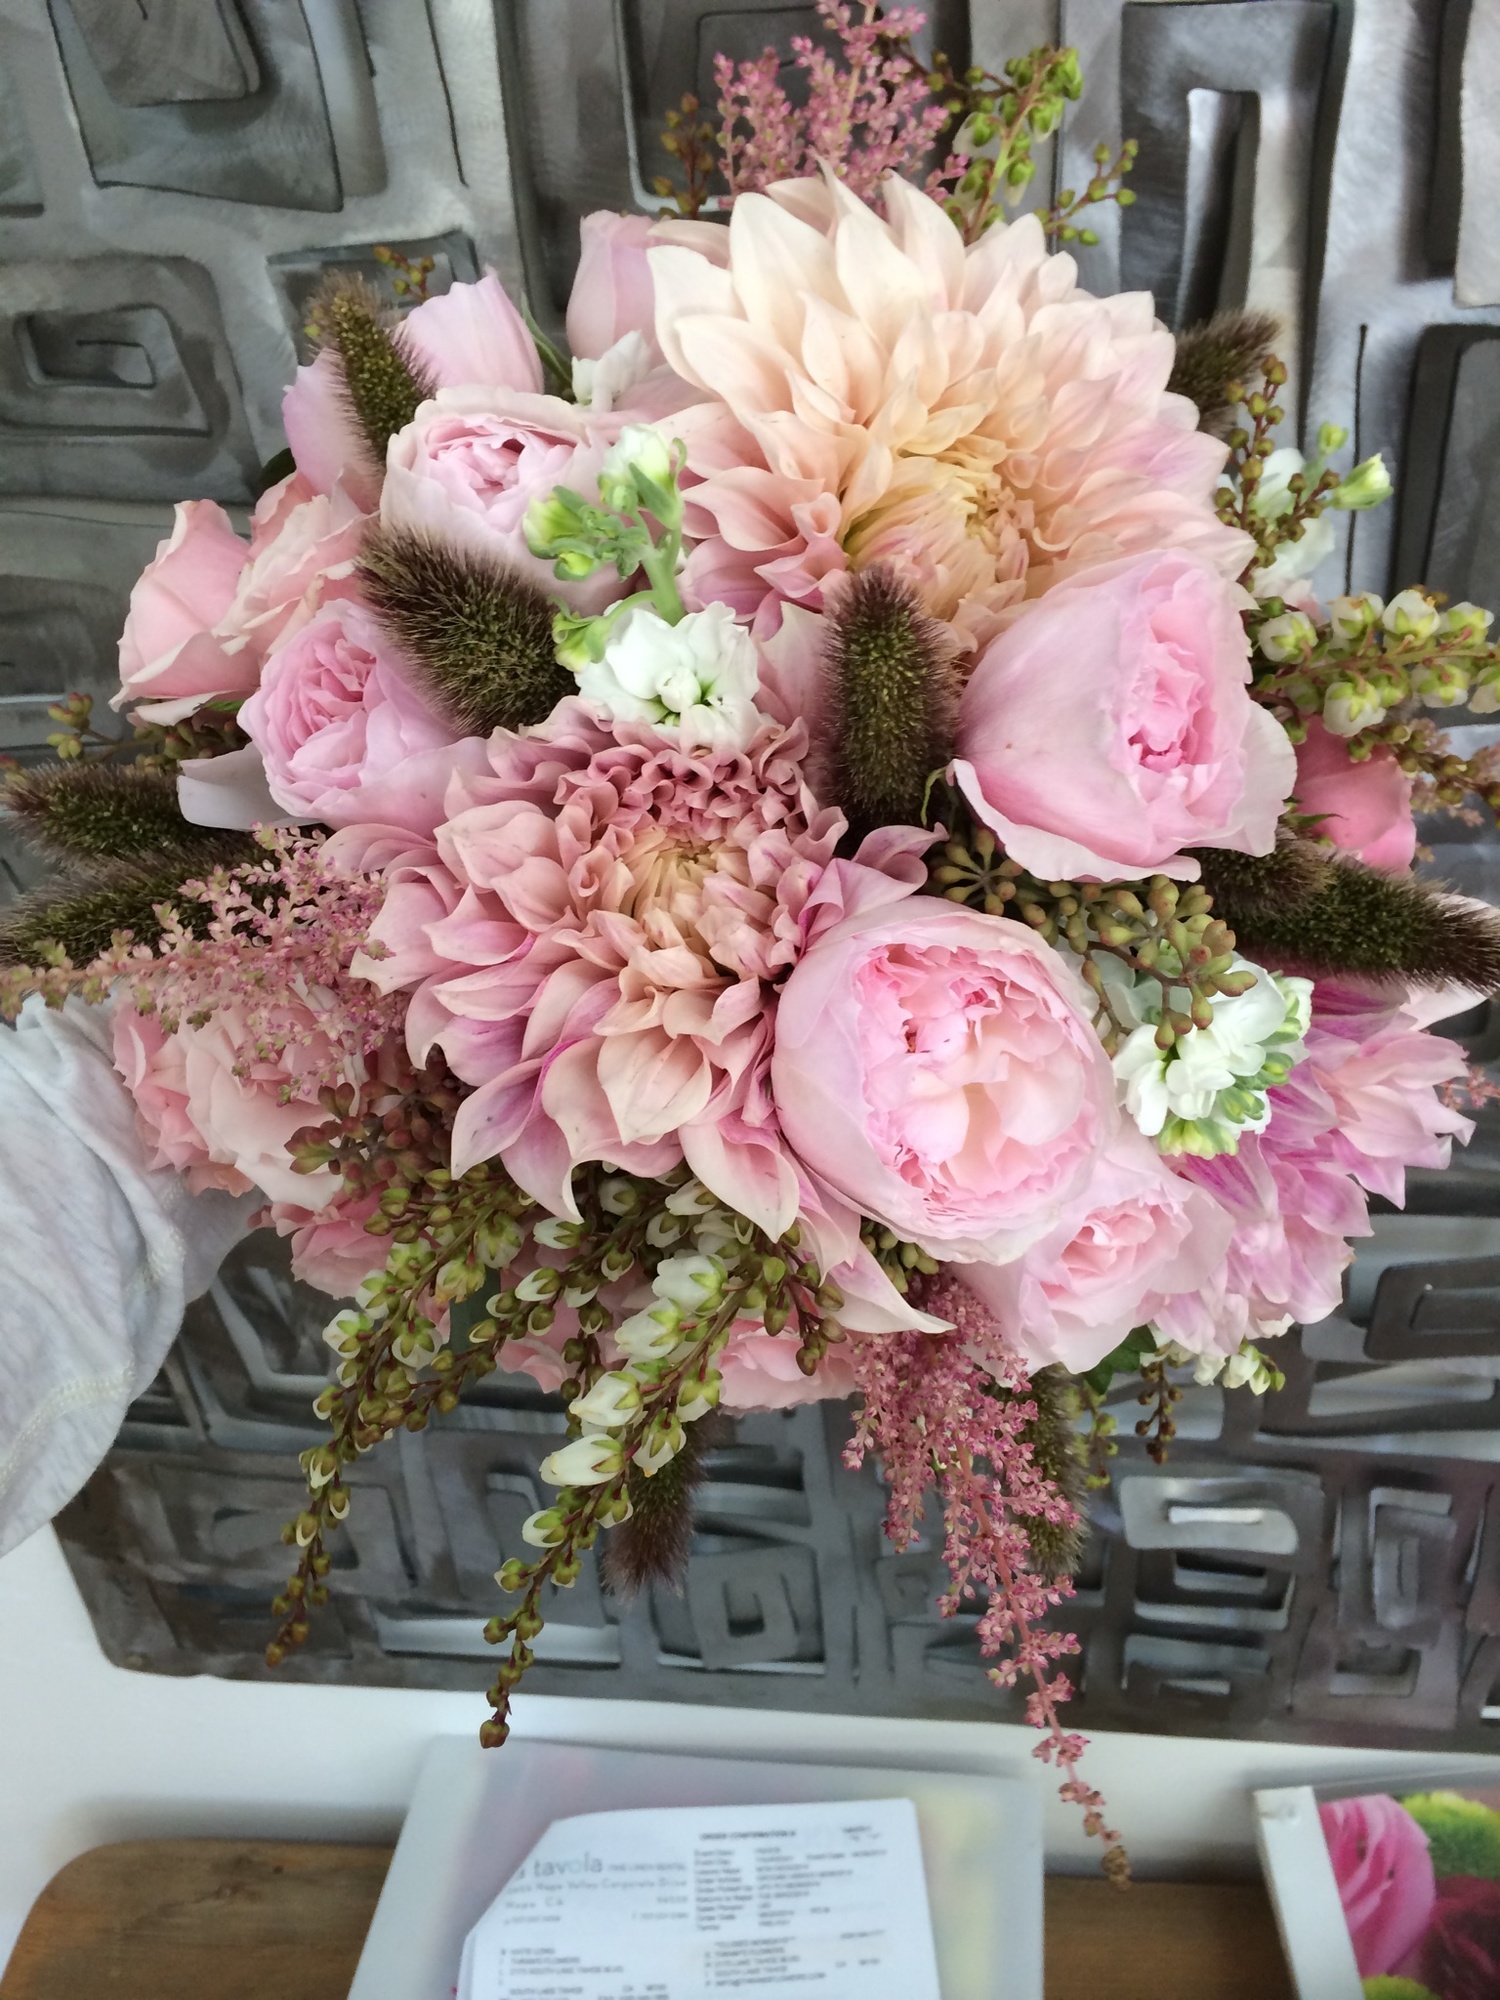 Pink Ribbon Bouquet™ - Wilmington, DE Florist